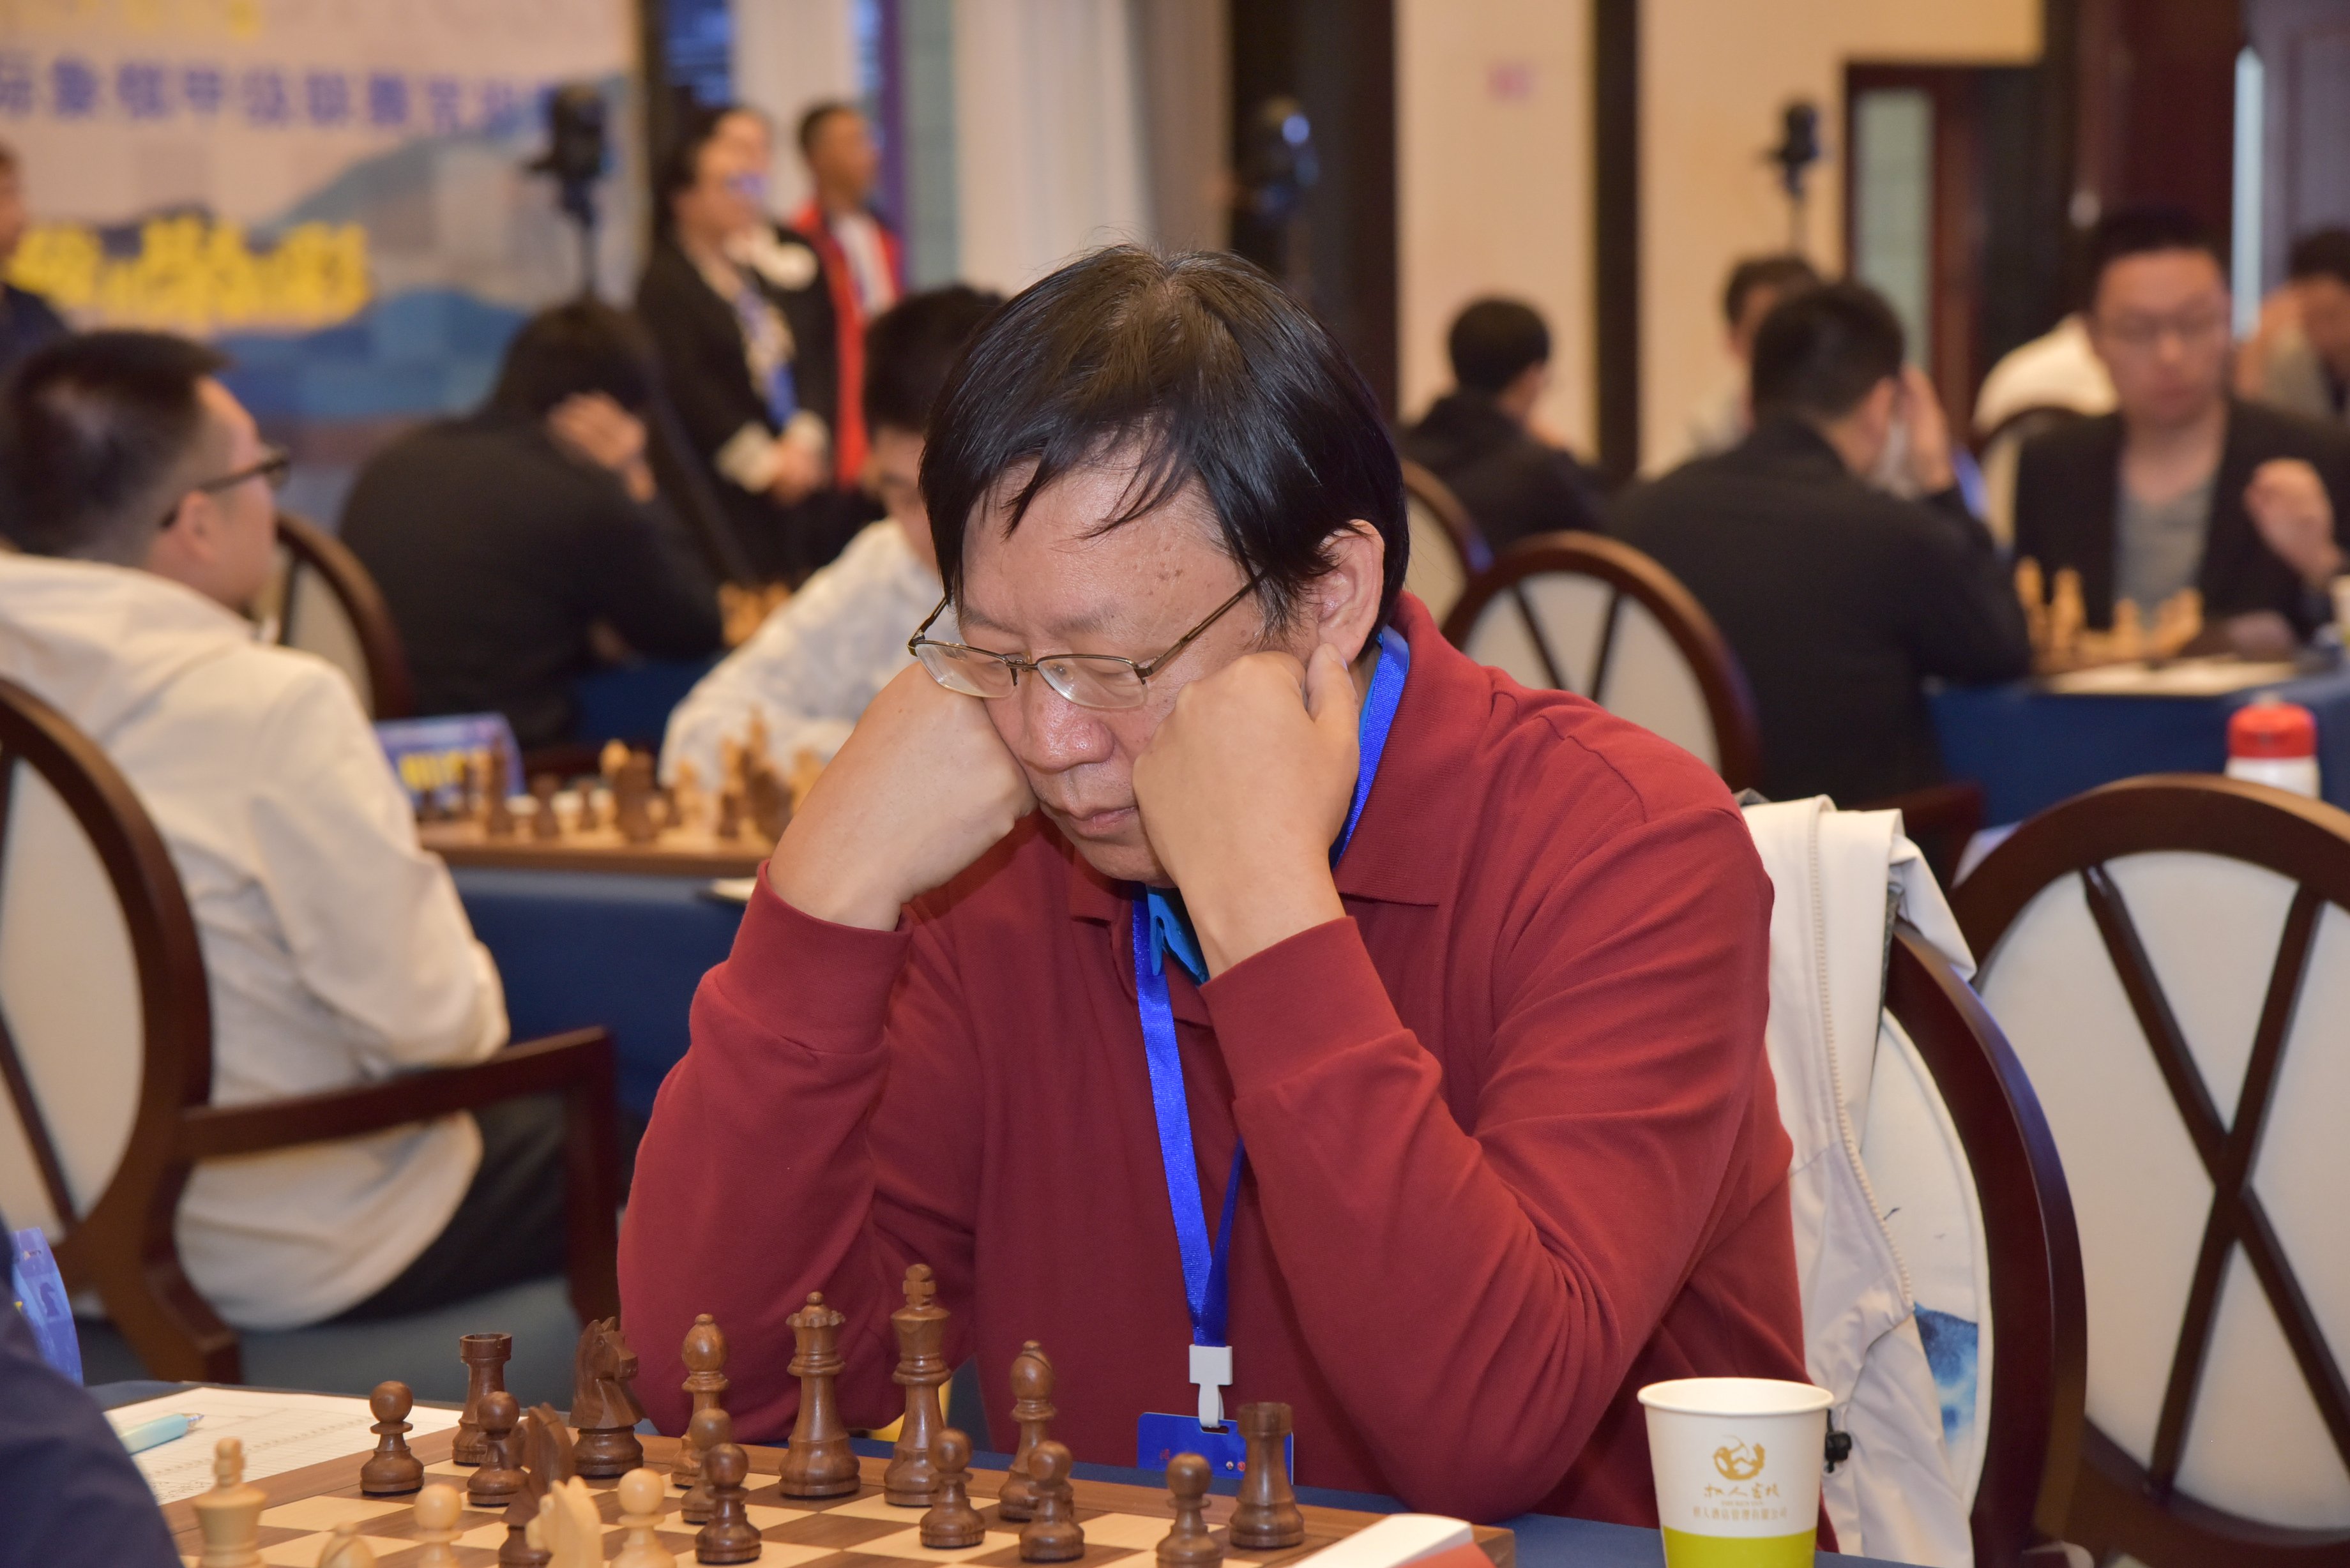 Liang Ziming on X: 2023 Chinese Chess League A started today in Fuling  Chongqing. Ding Liren, Yu Yangyi, Hou Yifan, Lei Tingjie and Tan Zhongyi  are all abasent. GM Ye Jiangchuan played